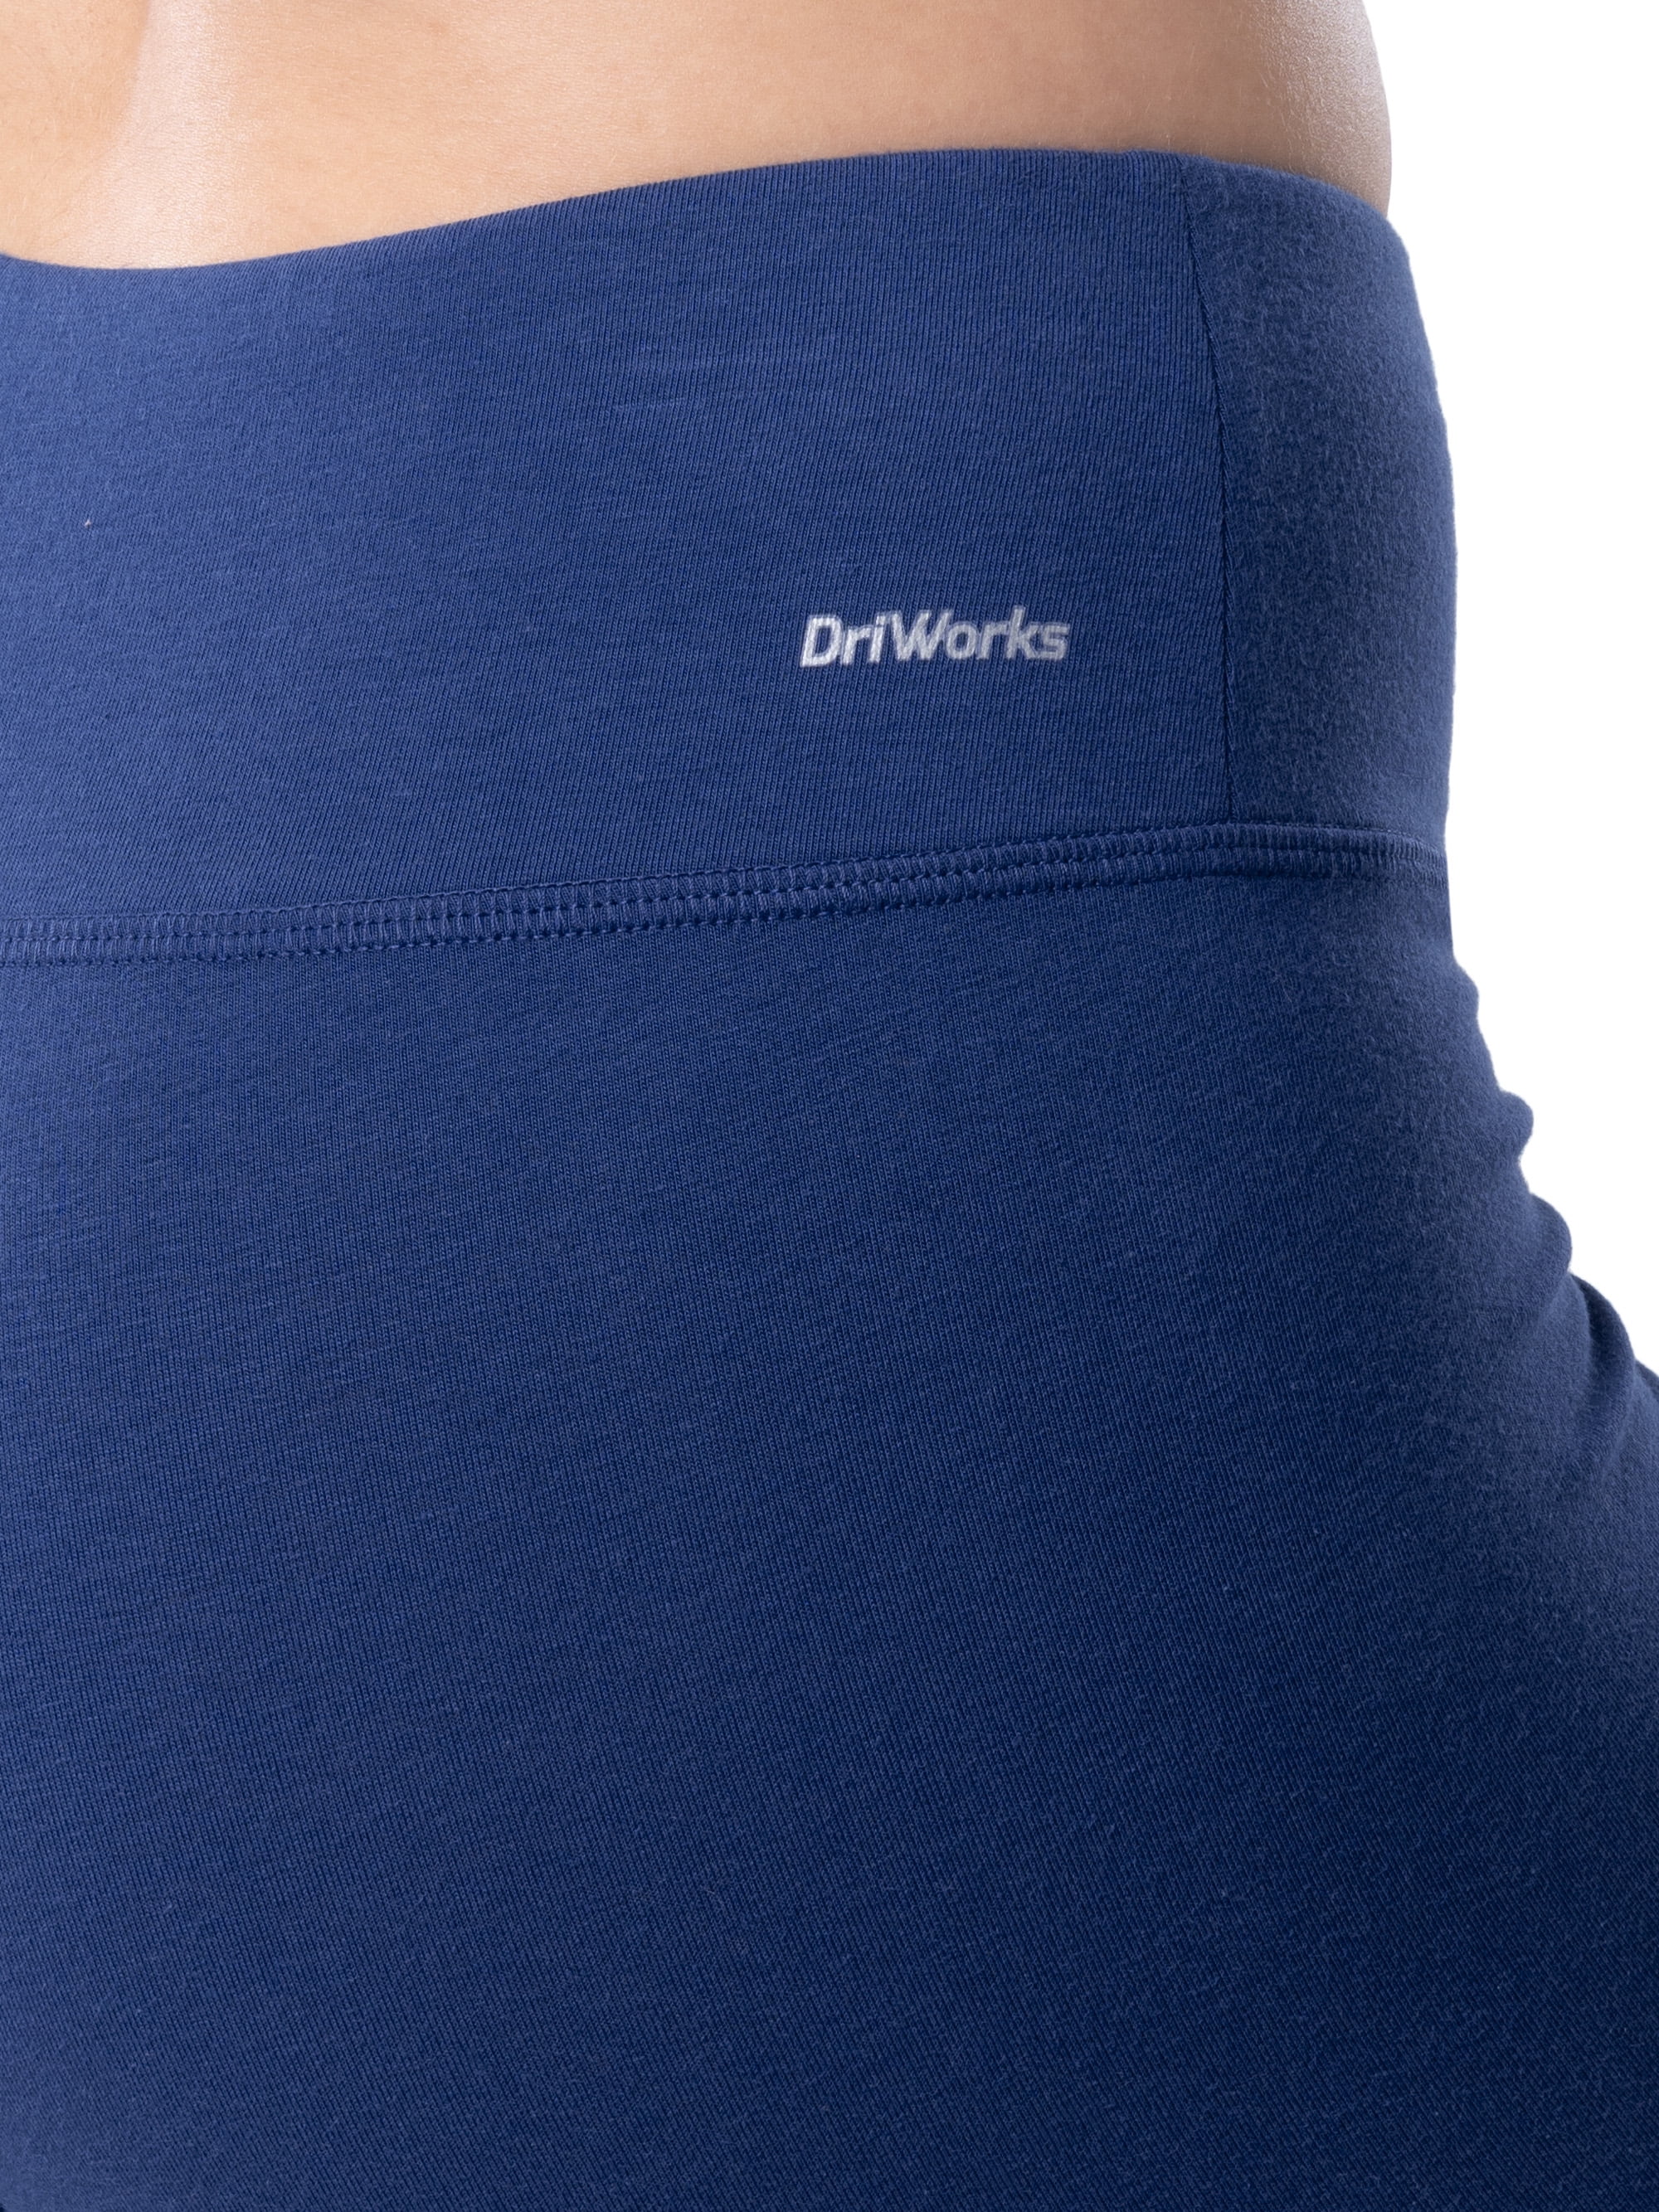 Driworks Athletic Pants